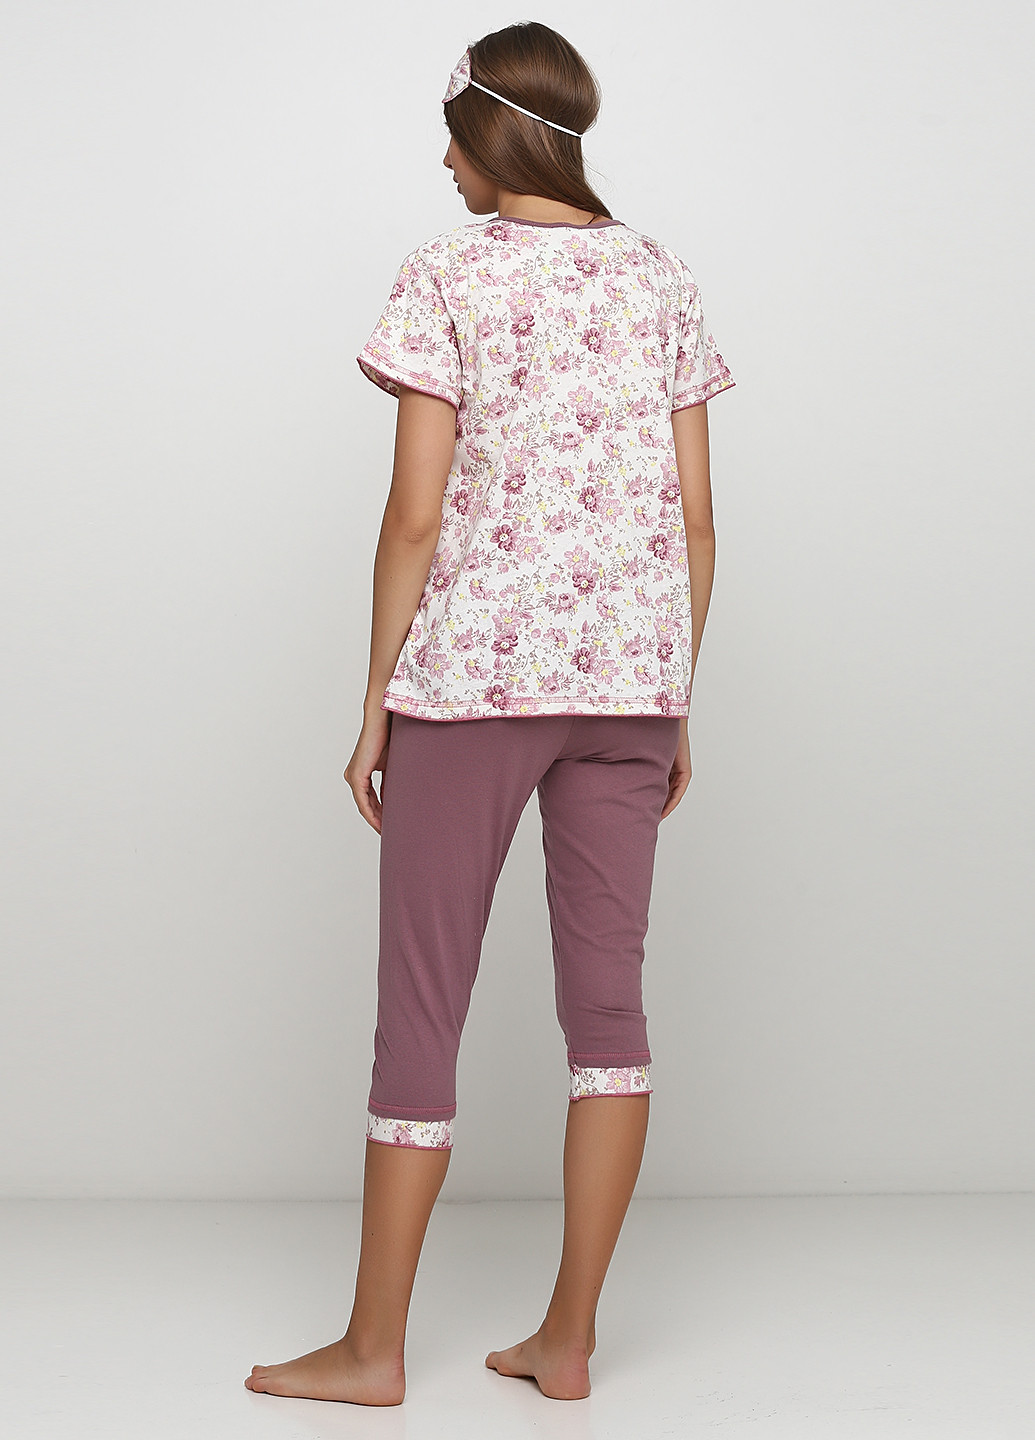 Розово-лиловый демисезонный комплект (футболка, бриджи, маска для сна) Трикомир